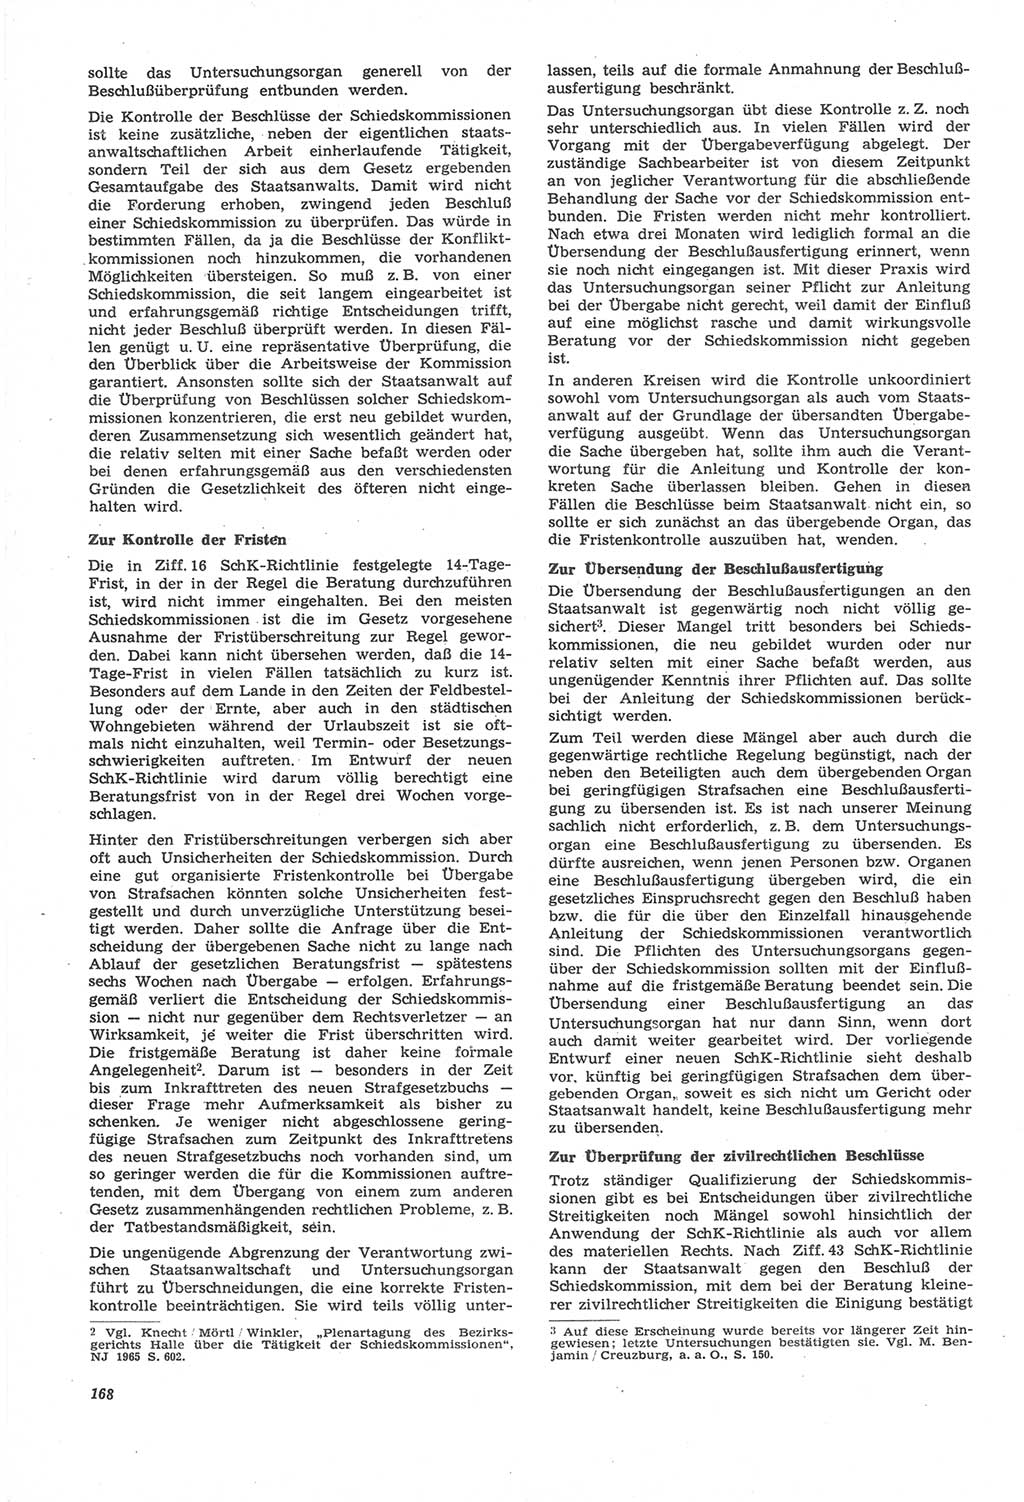 Neue Justiz (NJ), Zeitschrift für Recht und Rechtswissenschaft [Deutsche Demokratische Republik (DDR)], 22. Jahrgang 1968, Seite 168 (NJ DDR 1968, S. 168)